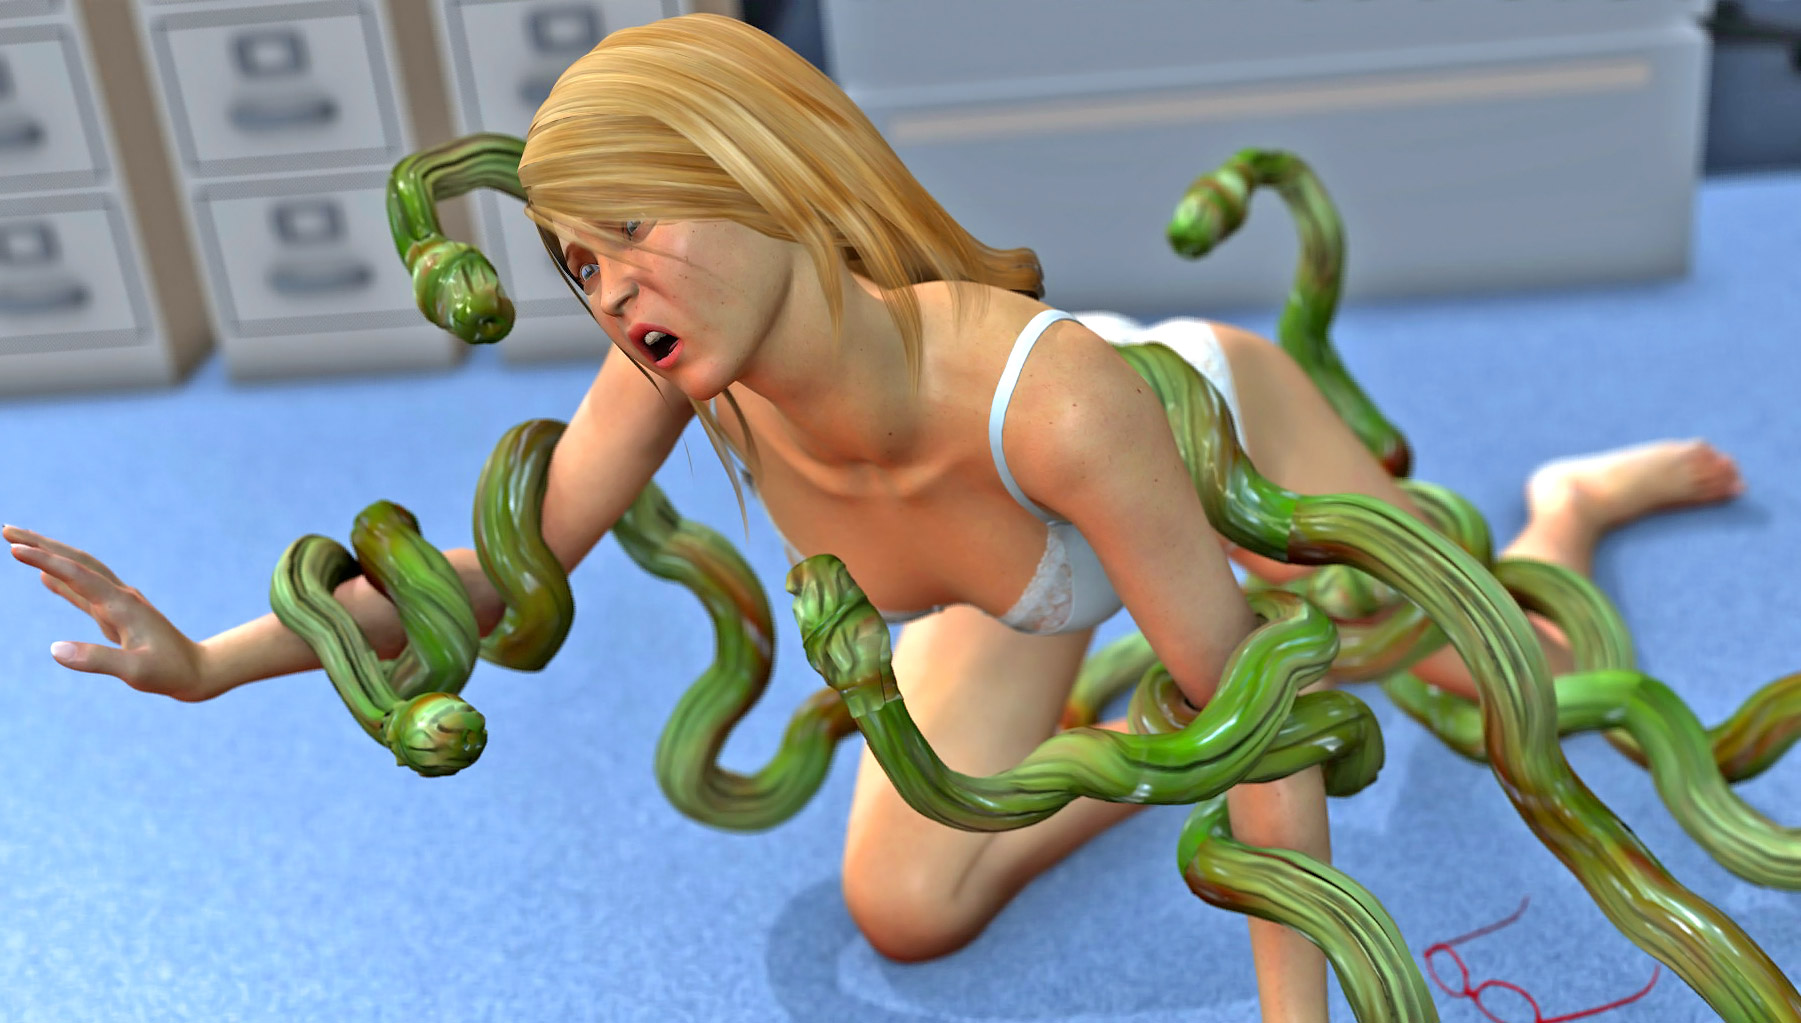 Green tentacle monster drilling a helpless girl | 3dwerewolfporn.com